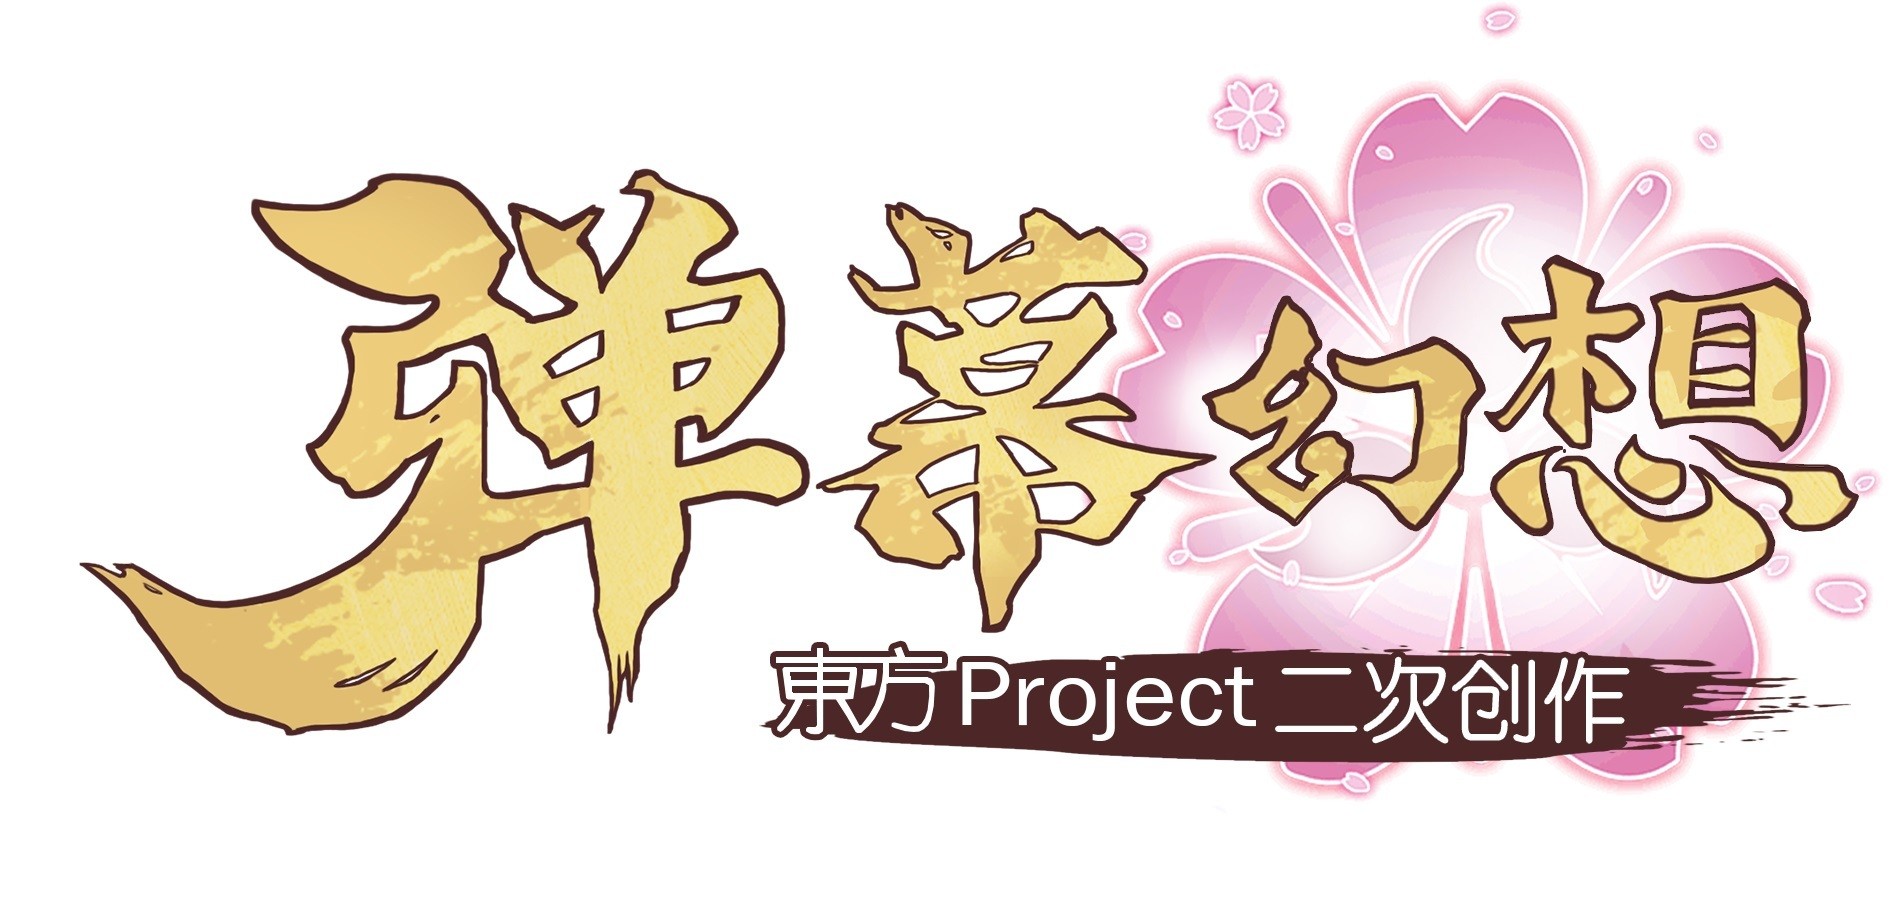 KLab 宣布獲「東方 Project」二次創作手機遊戲全球發行權 簡中版本 4 月 26 日開啟預約